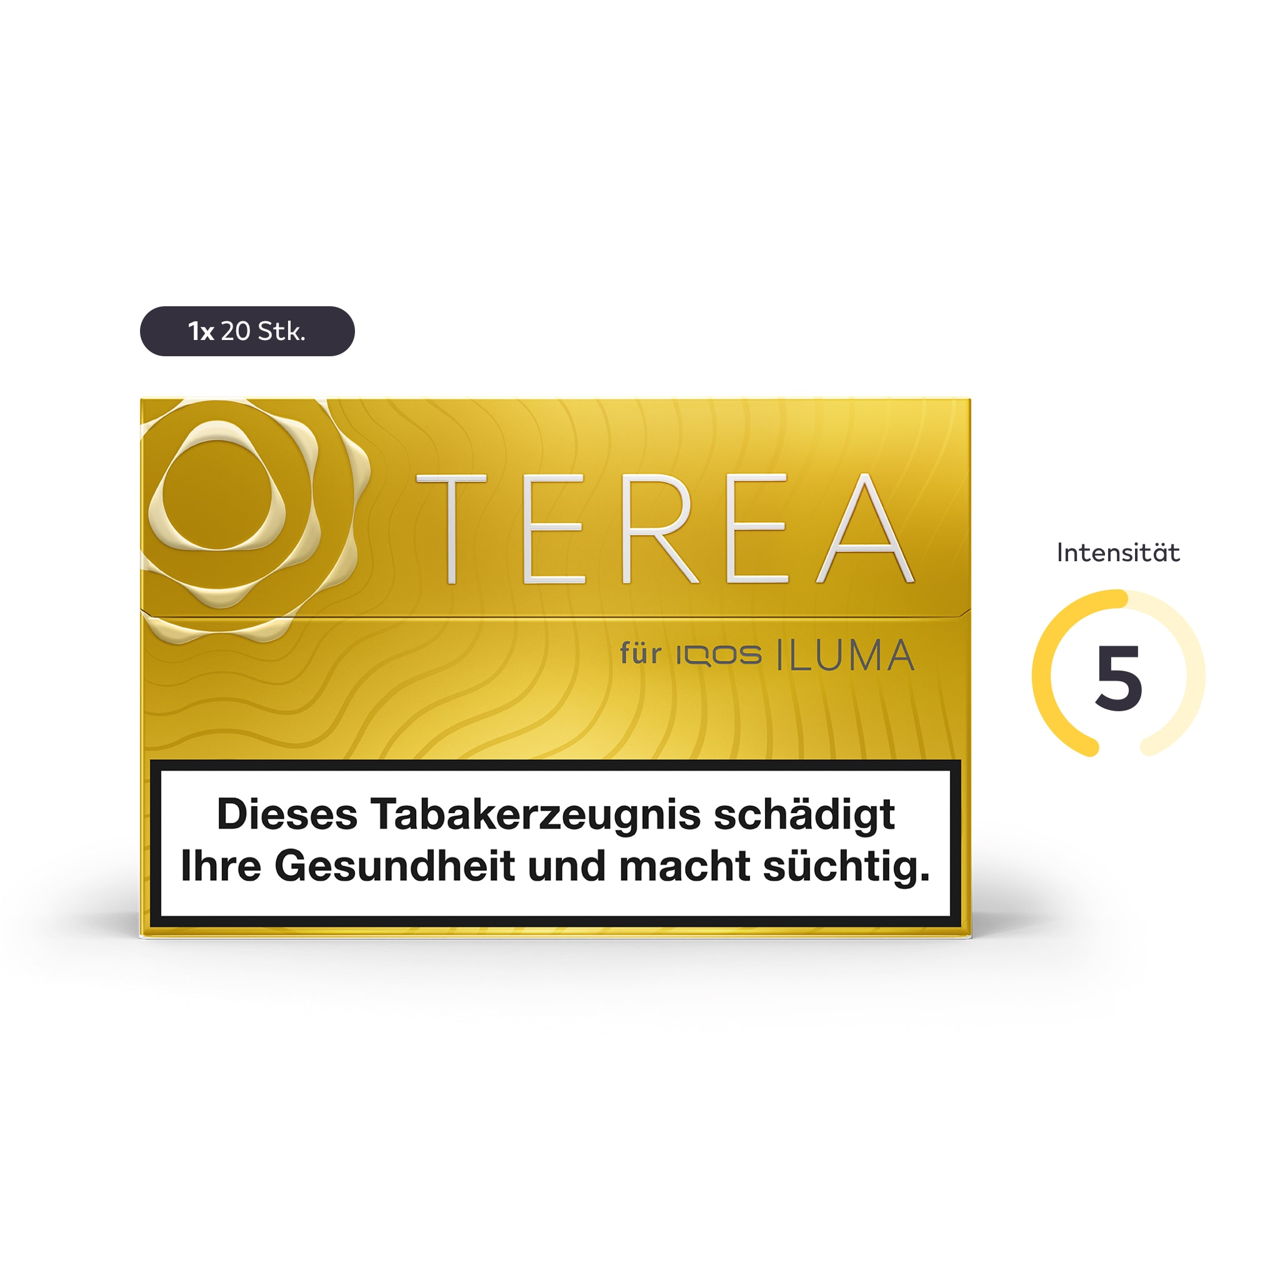 IQOS TEREA Tabaksticks - Die Übersicht